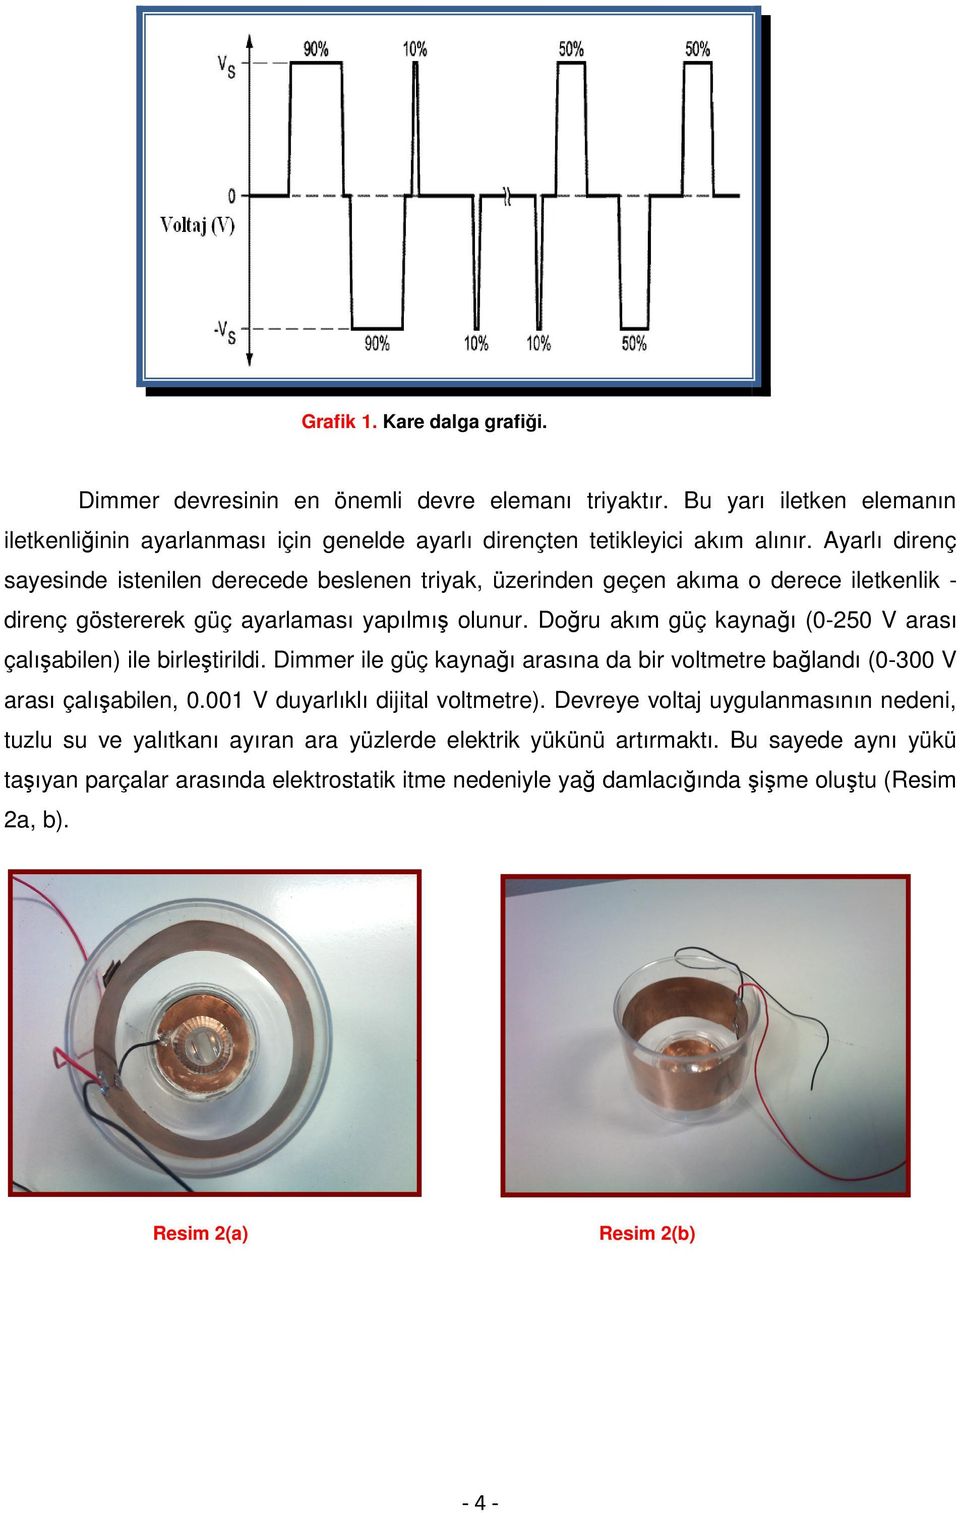 Doru akım güç kaynaı (0-250 V arası çalıabilen) ile birletirildi. Dimmer ile güç kaynaı arasına da bir voltmetre balandı (0-300 V arası çalıabilen, 0.001 V duyarlıklı dijital voltmetre).